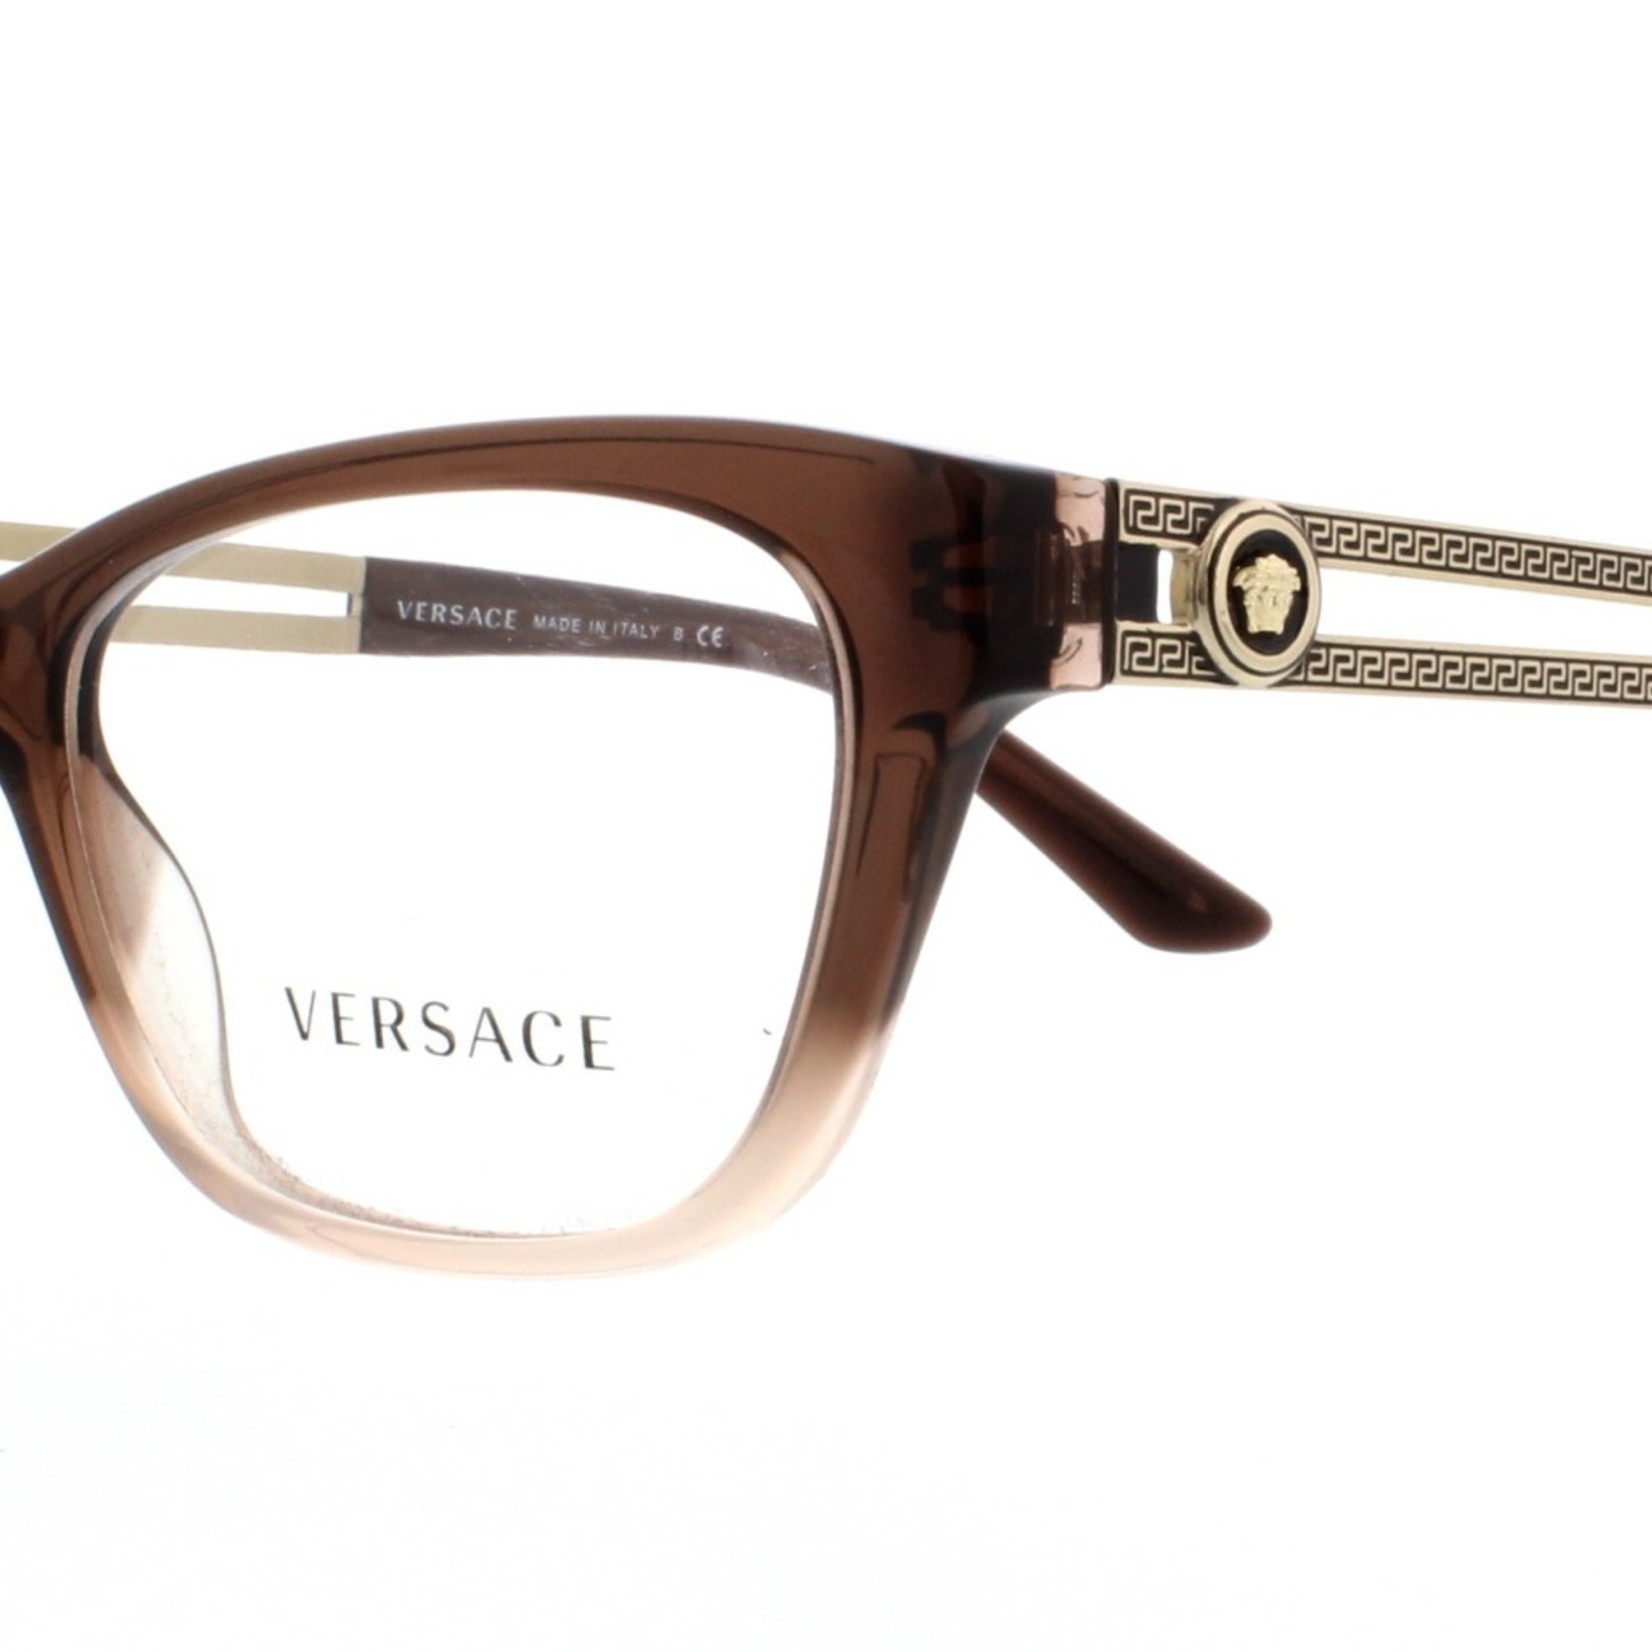 Versace Eyeglasses Frames 3220-5165 16-140 *Grade B